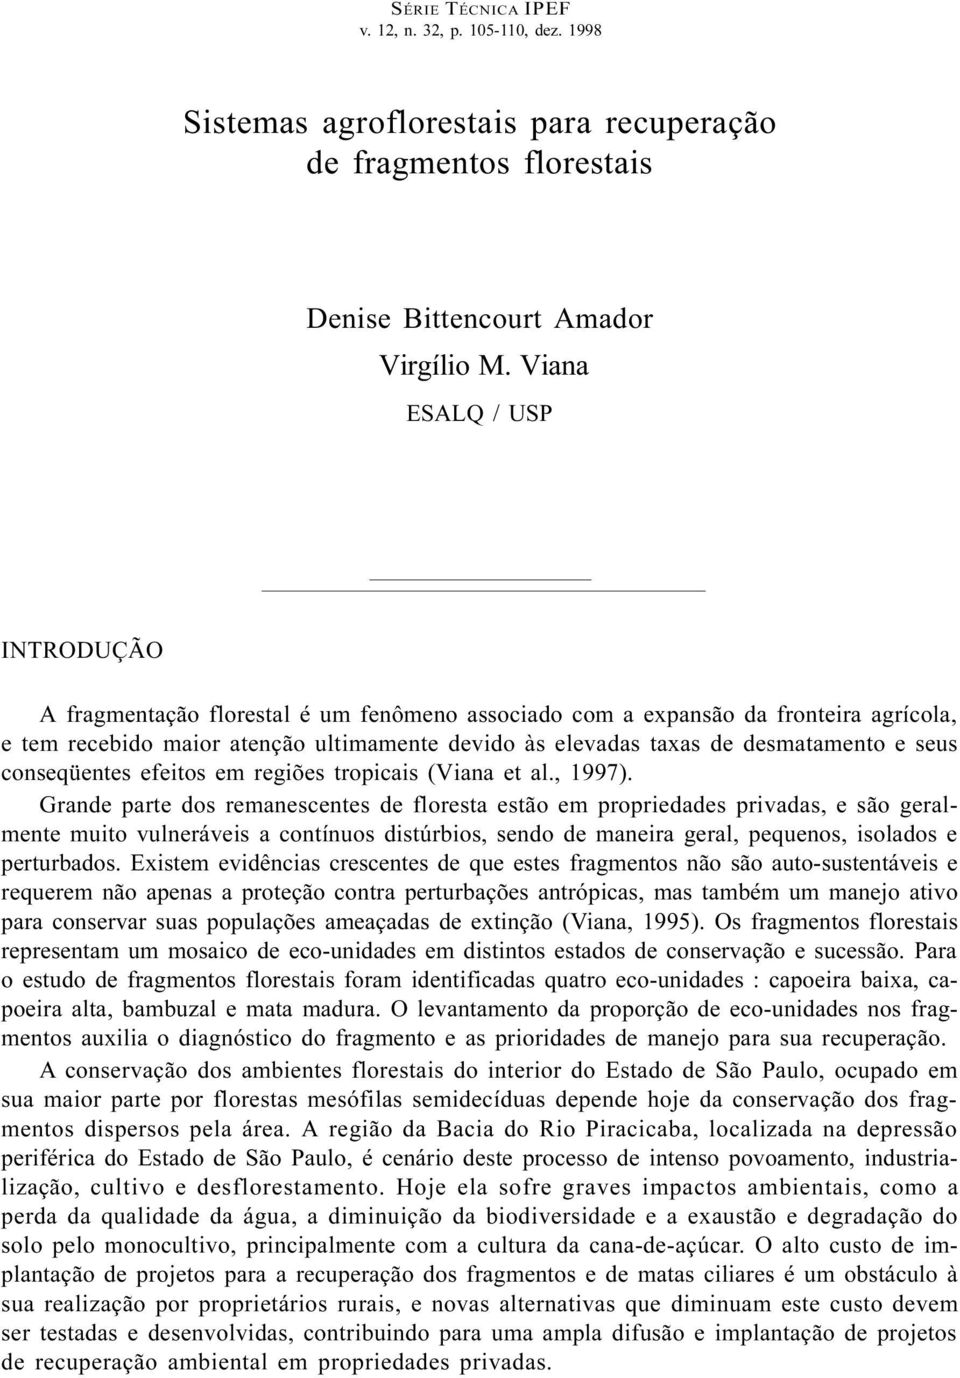 seus conseqüentes efeitos em regiões tropicais (Viana et al., 1997).